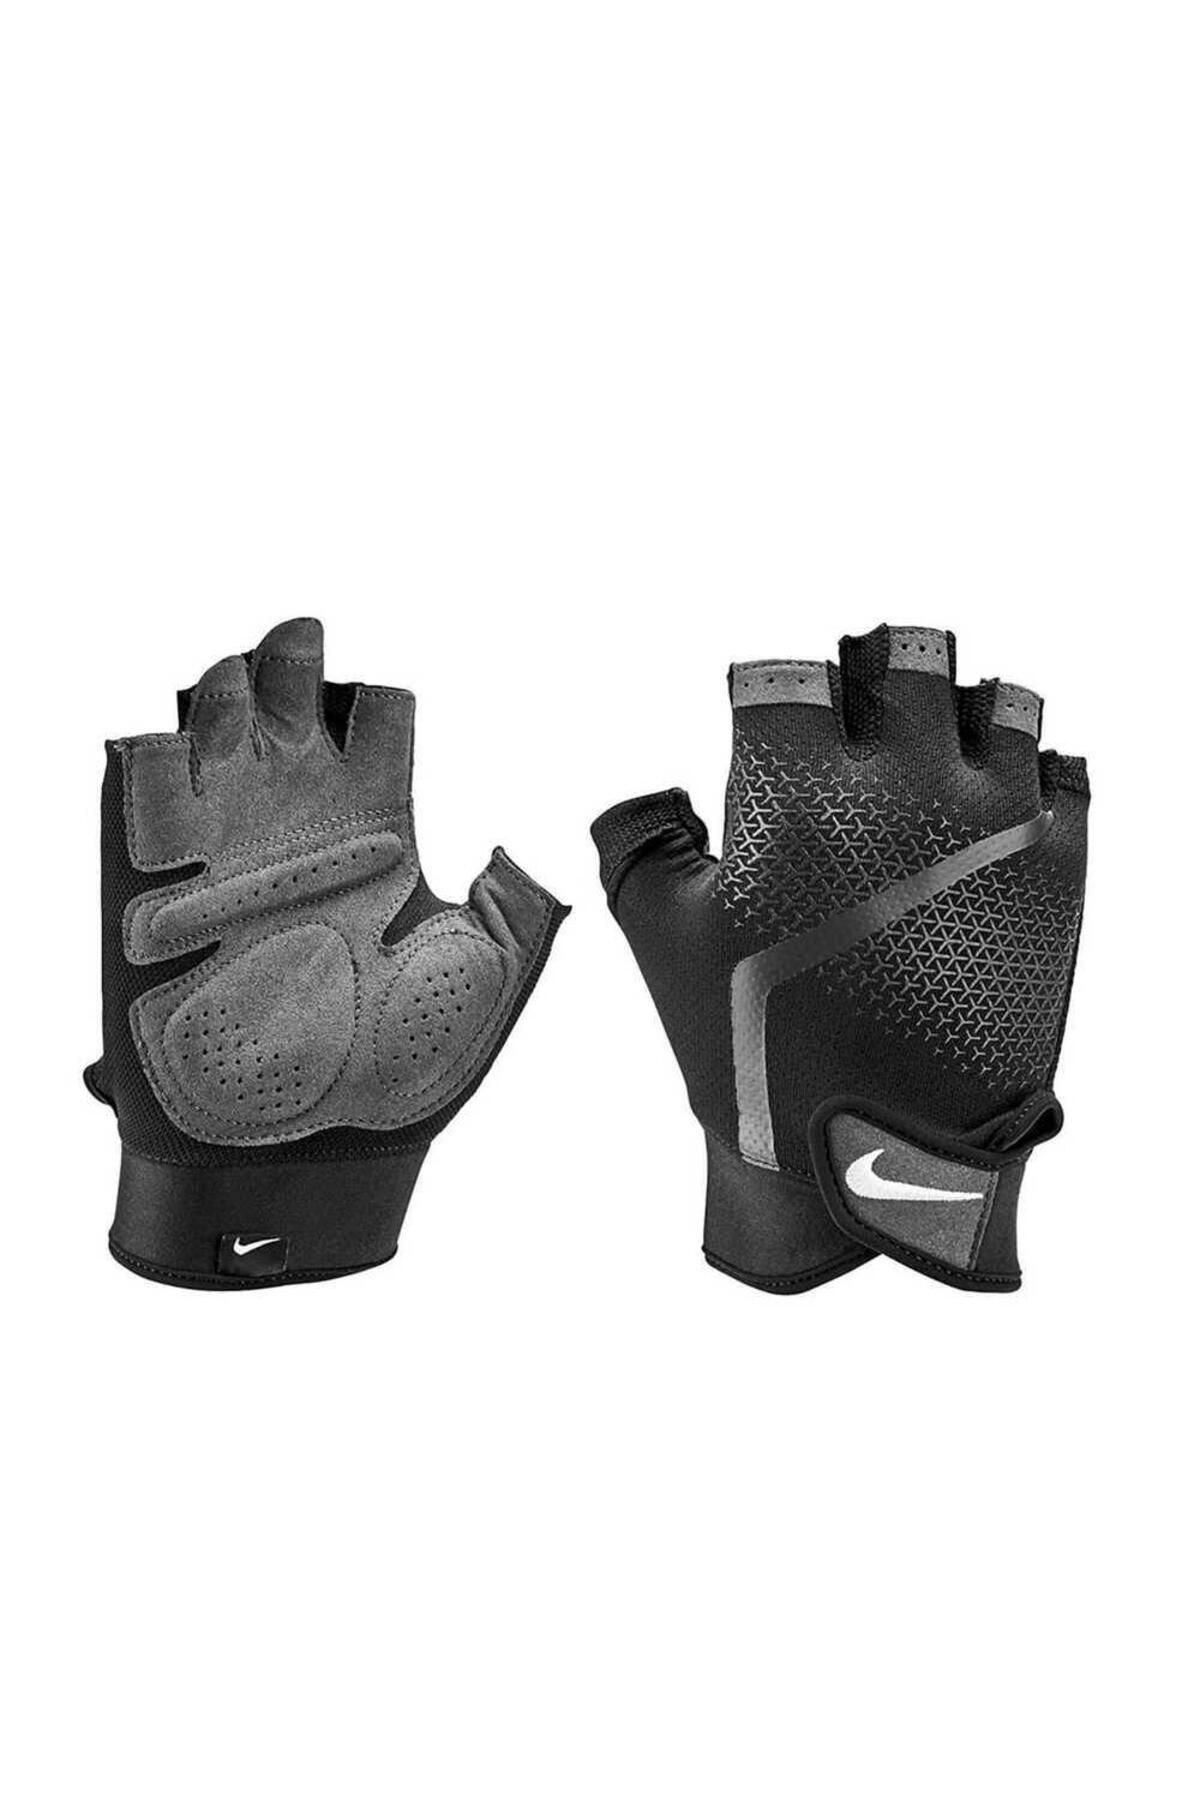 Nike Mens Extreme Fıtness Gloves Siyah Erkek Eldiven N.lg.c4.945